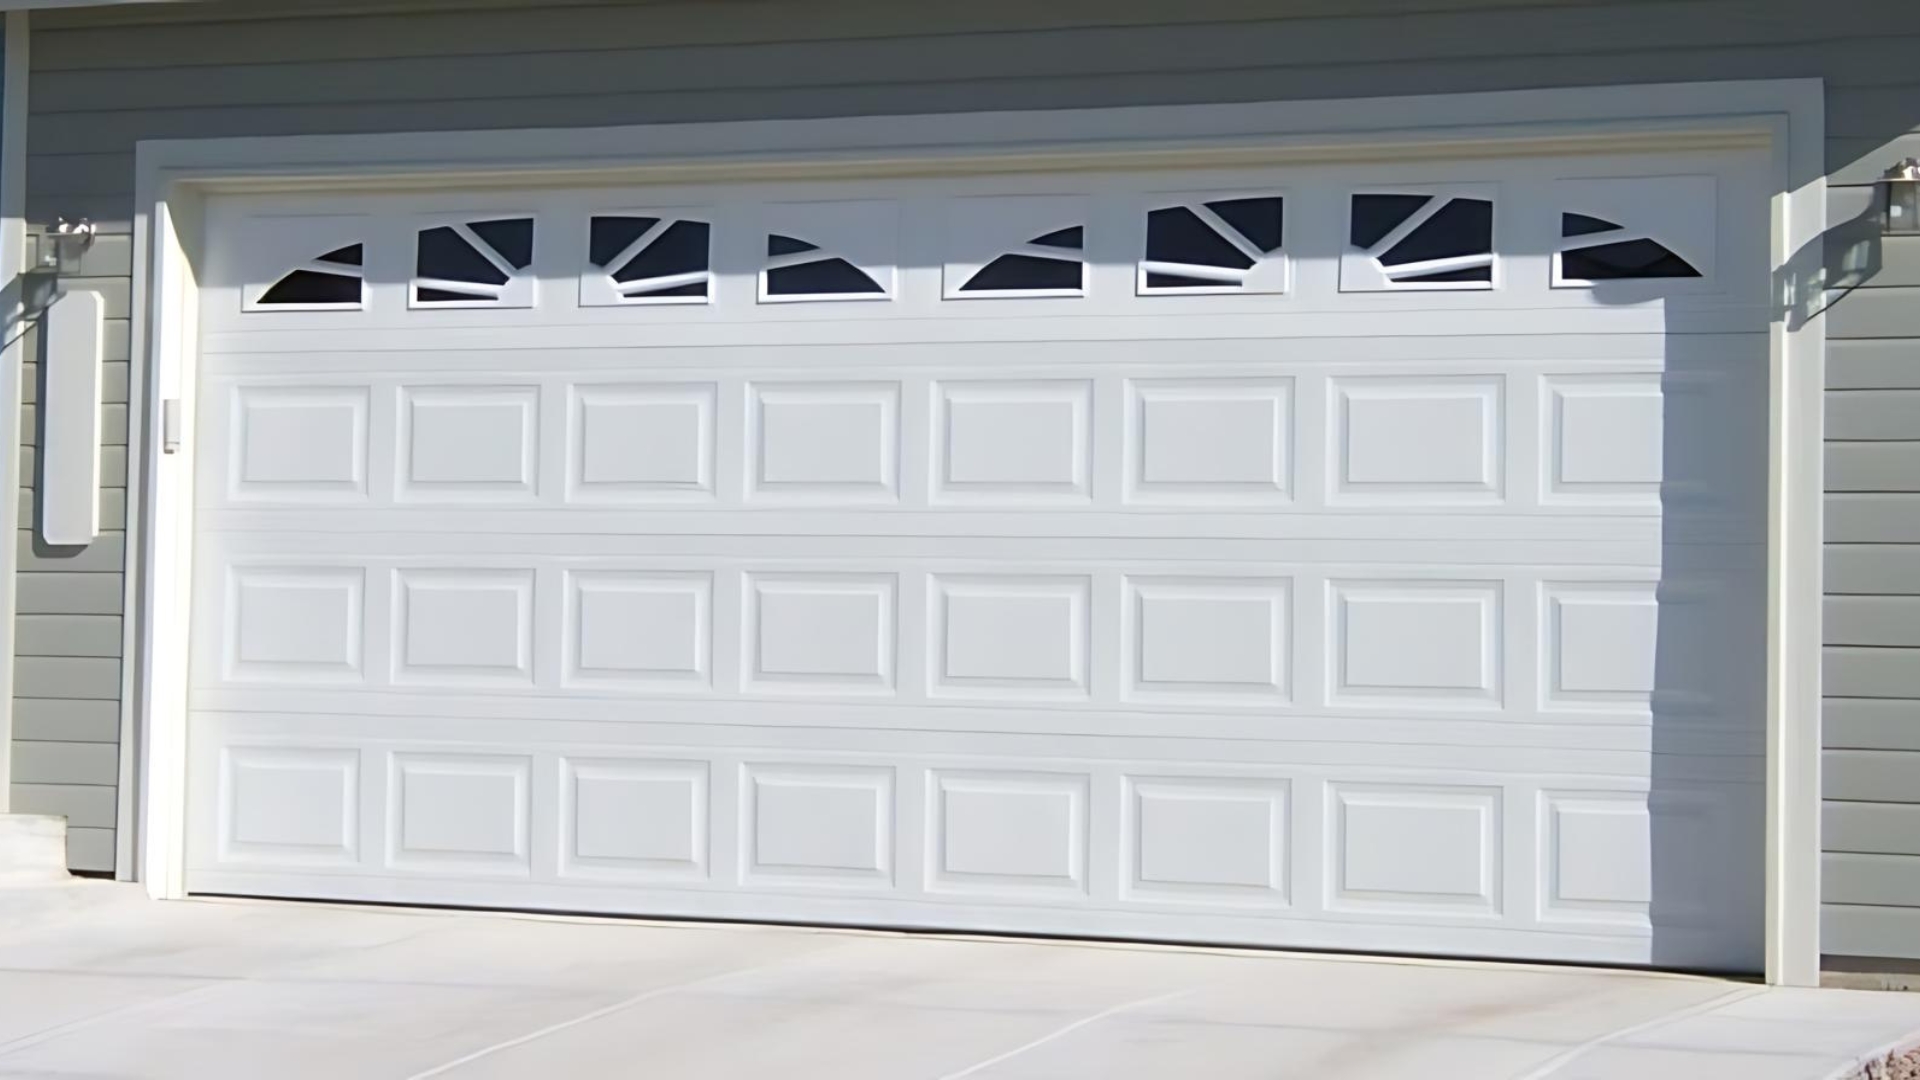 A steel garage door painted in white